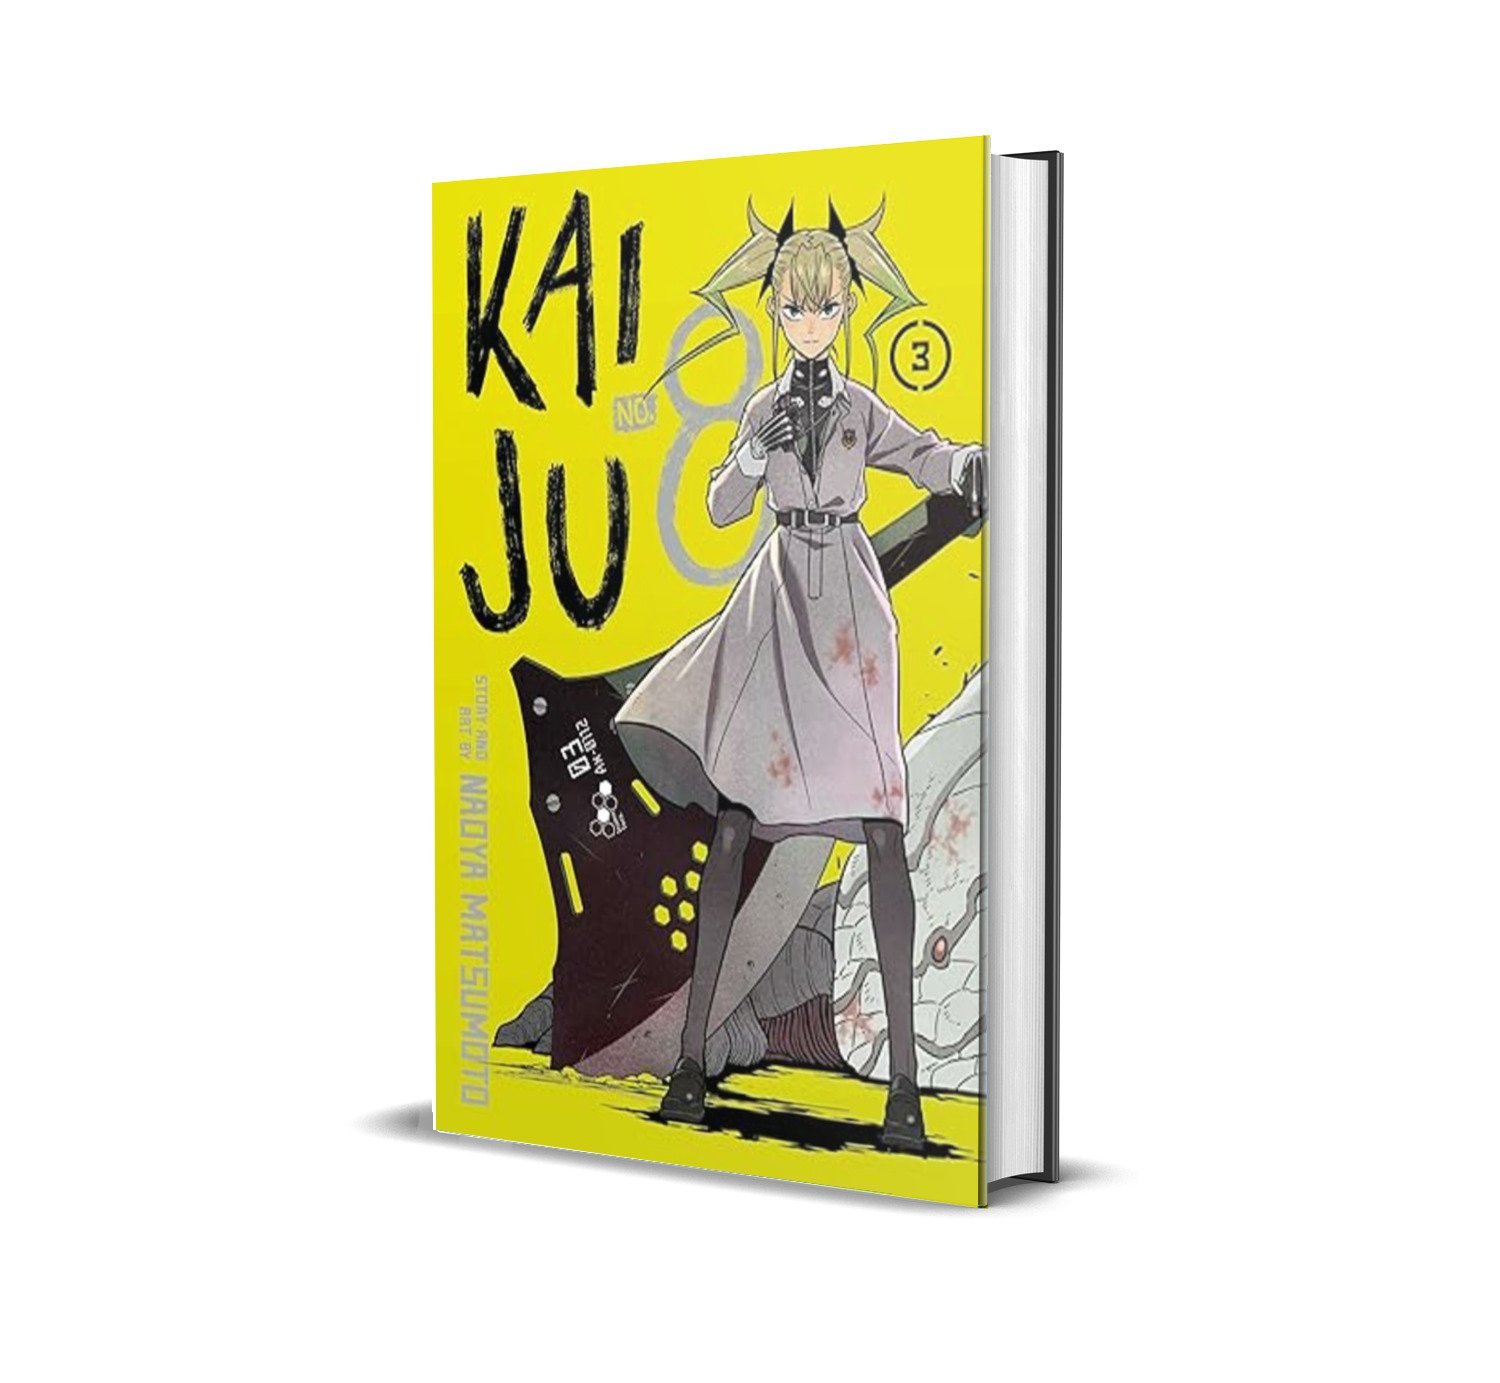 Kaiju No 8 Vol 03 by Naoya Matsumoto